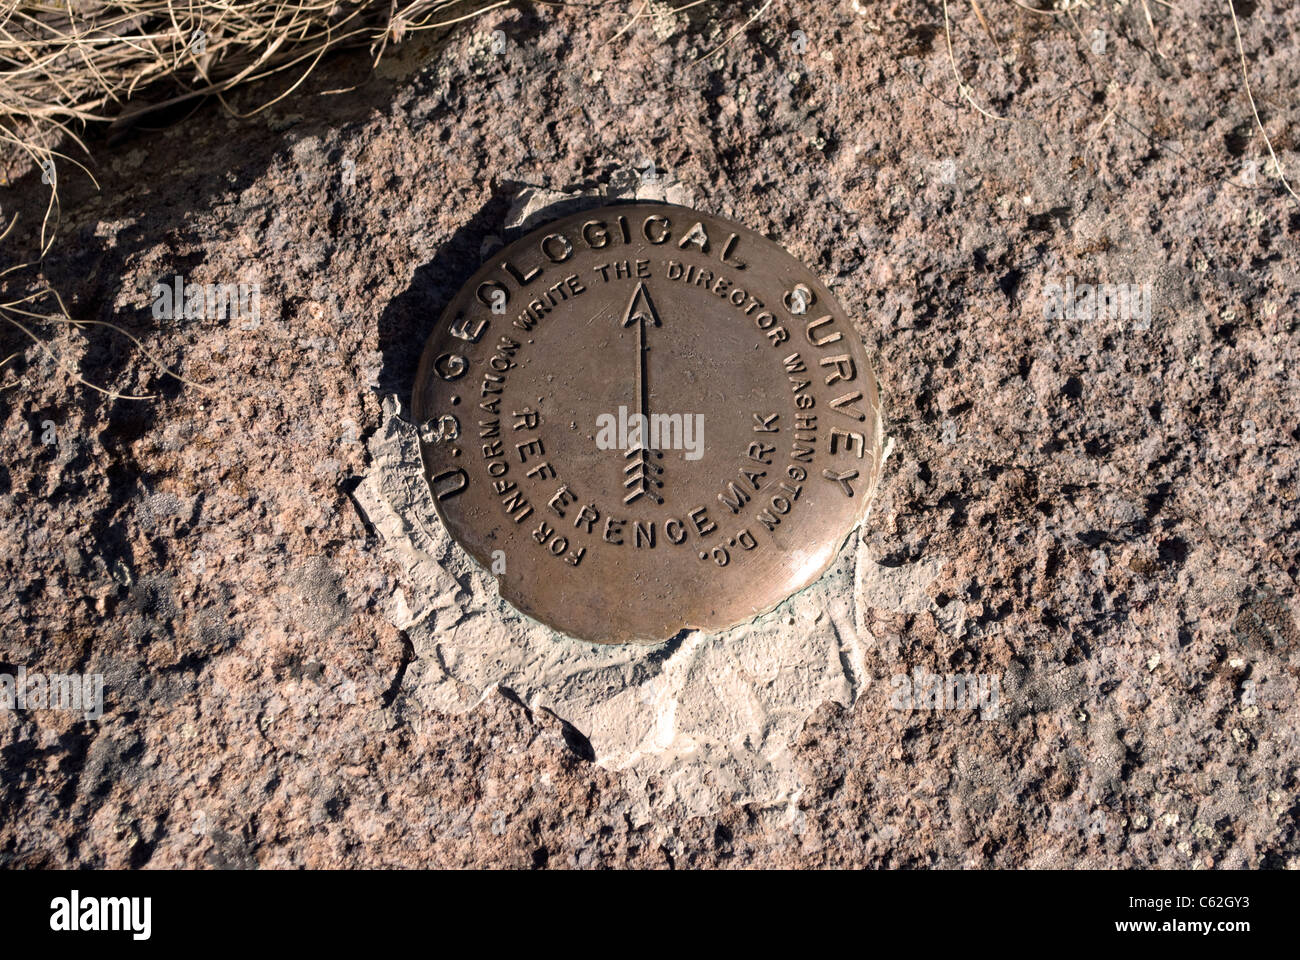 Eine Referenz-Markierung am Gipfel des Cerro Grande, bezeichnet die Position des US Geological Service Umfrage Marker gefunden. Stockfoto